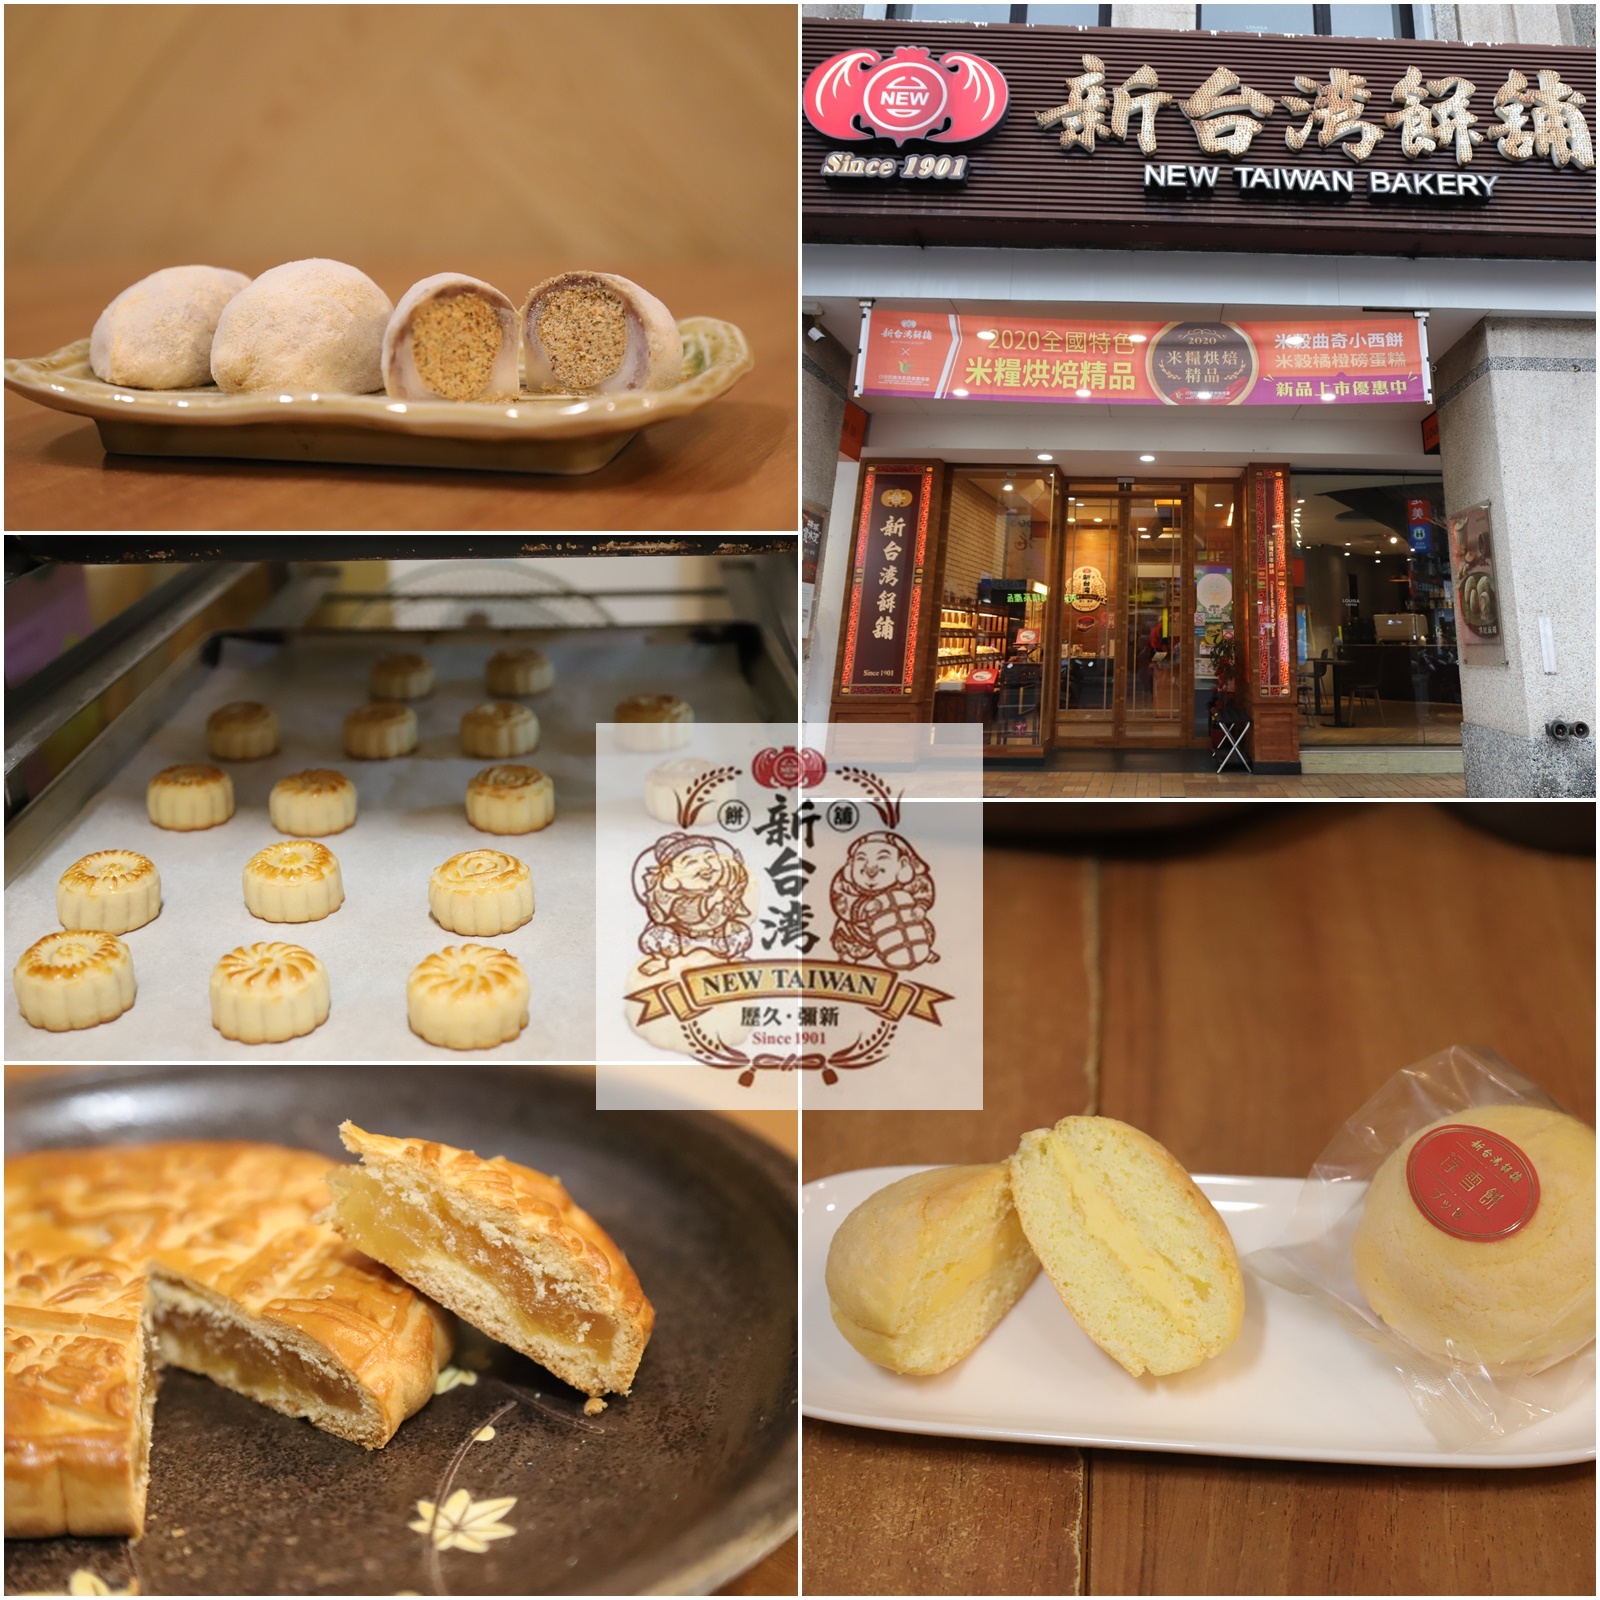 推薦嘉義古早味伴手禮必買 - 擁有百年歷史的台灣新餅舖 / 心中第一名麻糬